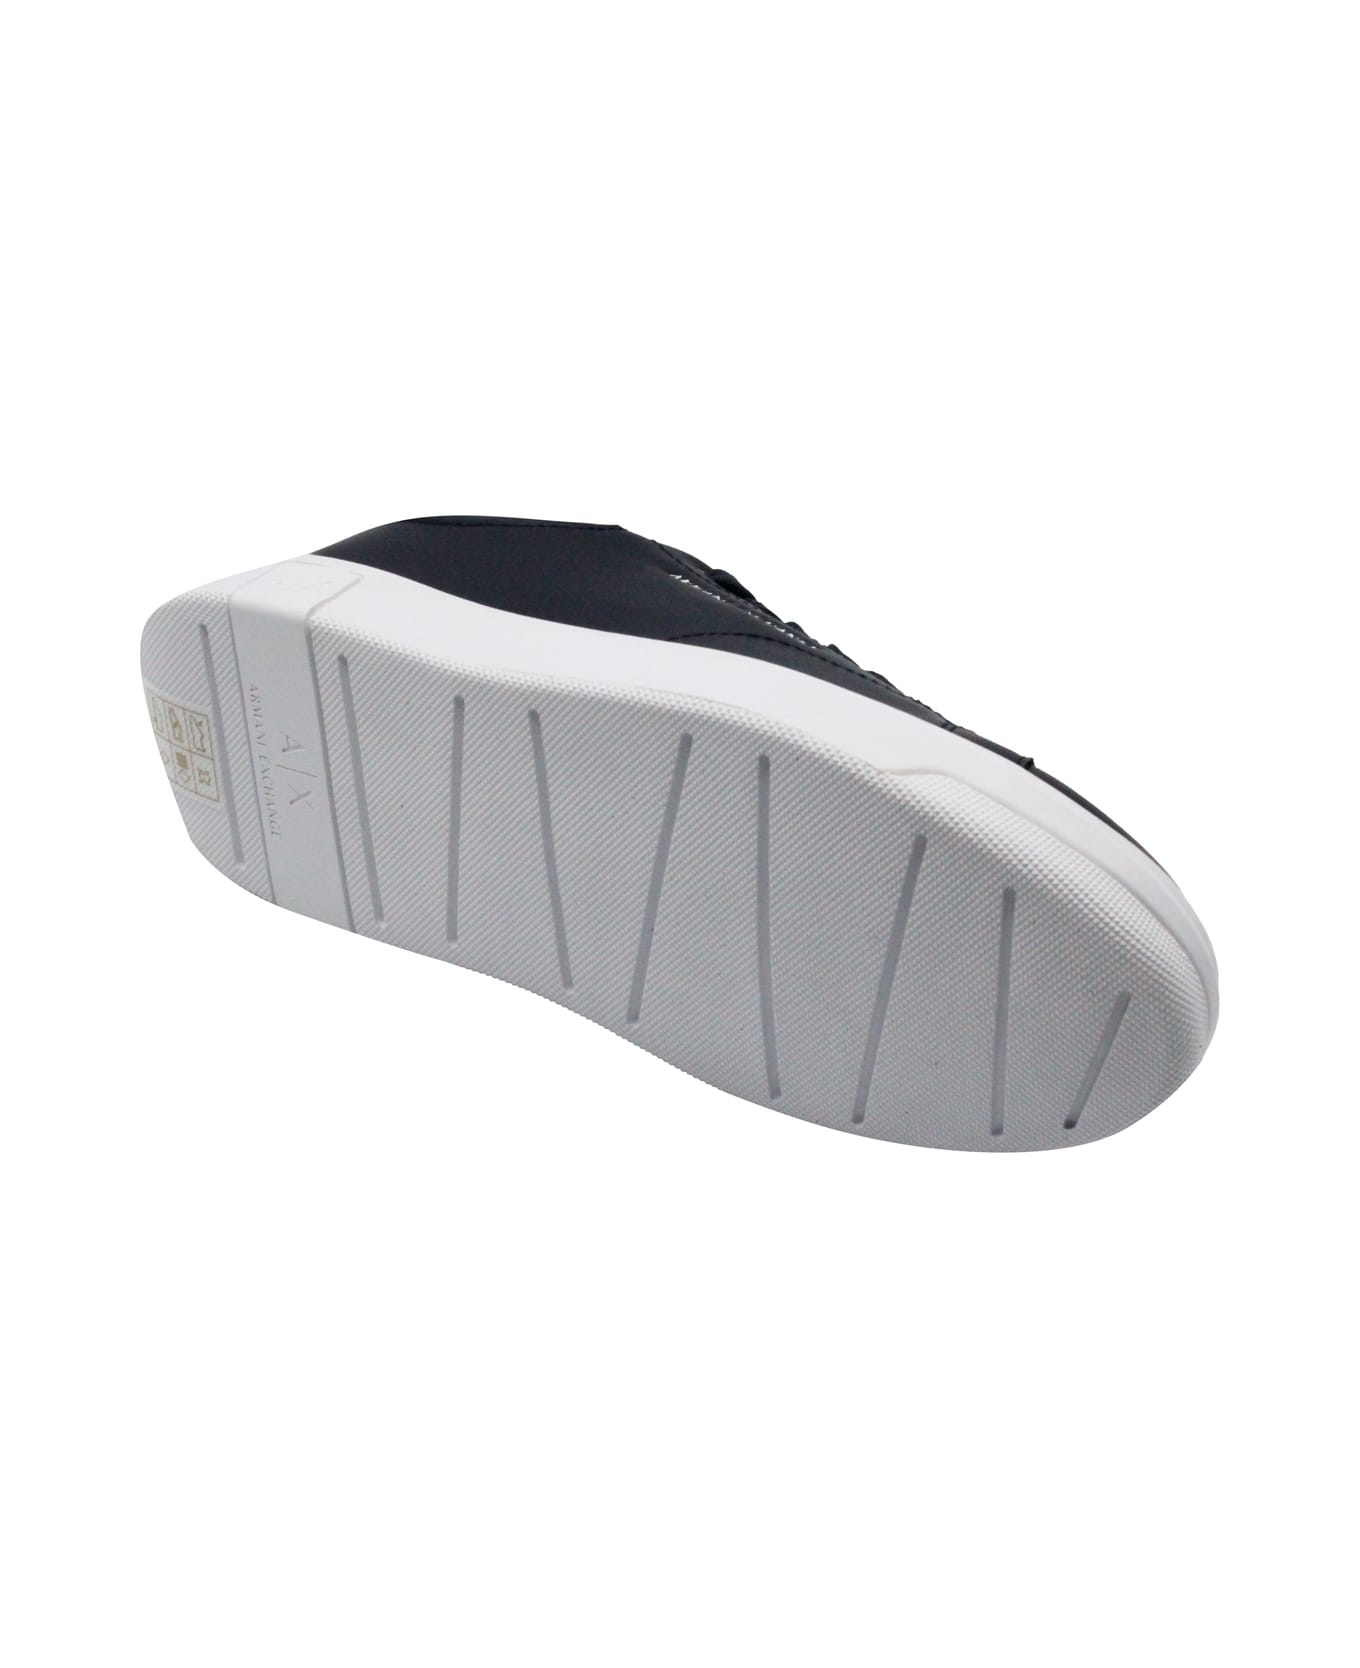 Armani Collezioni Light Sneaker In Soft Leather With White Sole - Blue